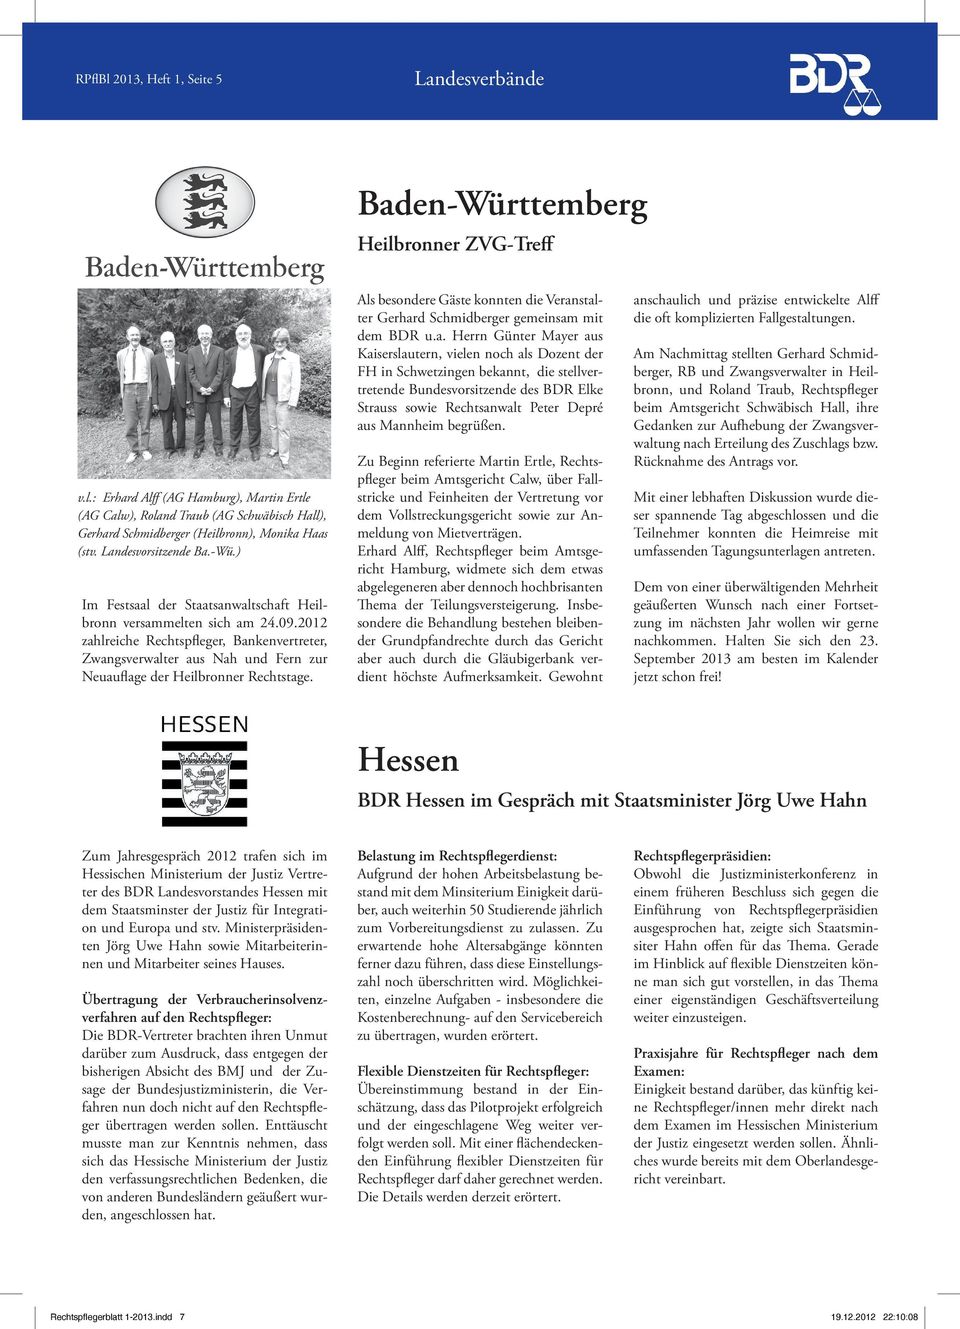 2012 zahlreiche Rechtspfleger, Bankenvertreter, Zwangsverwalter aus Nah und Fern zur Neuauflage der Heilbronner Rechtstage.